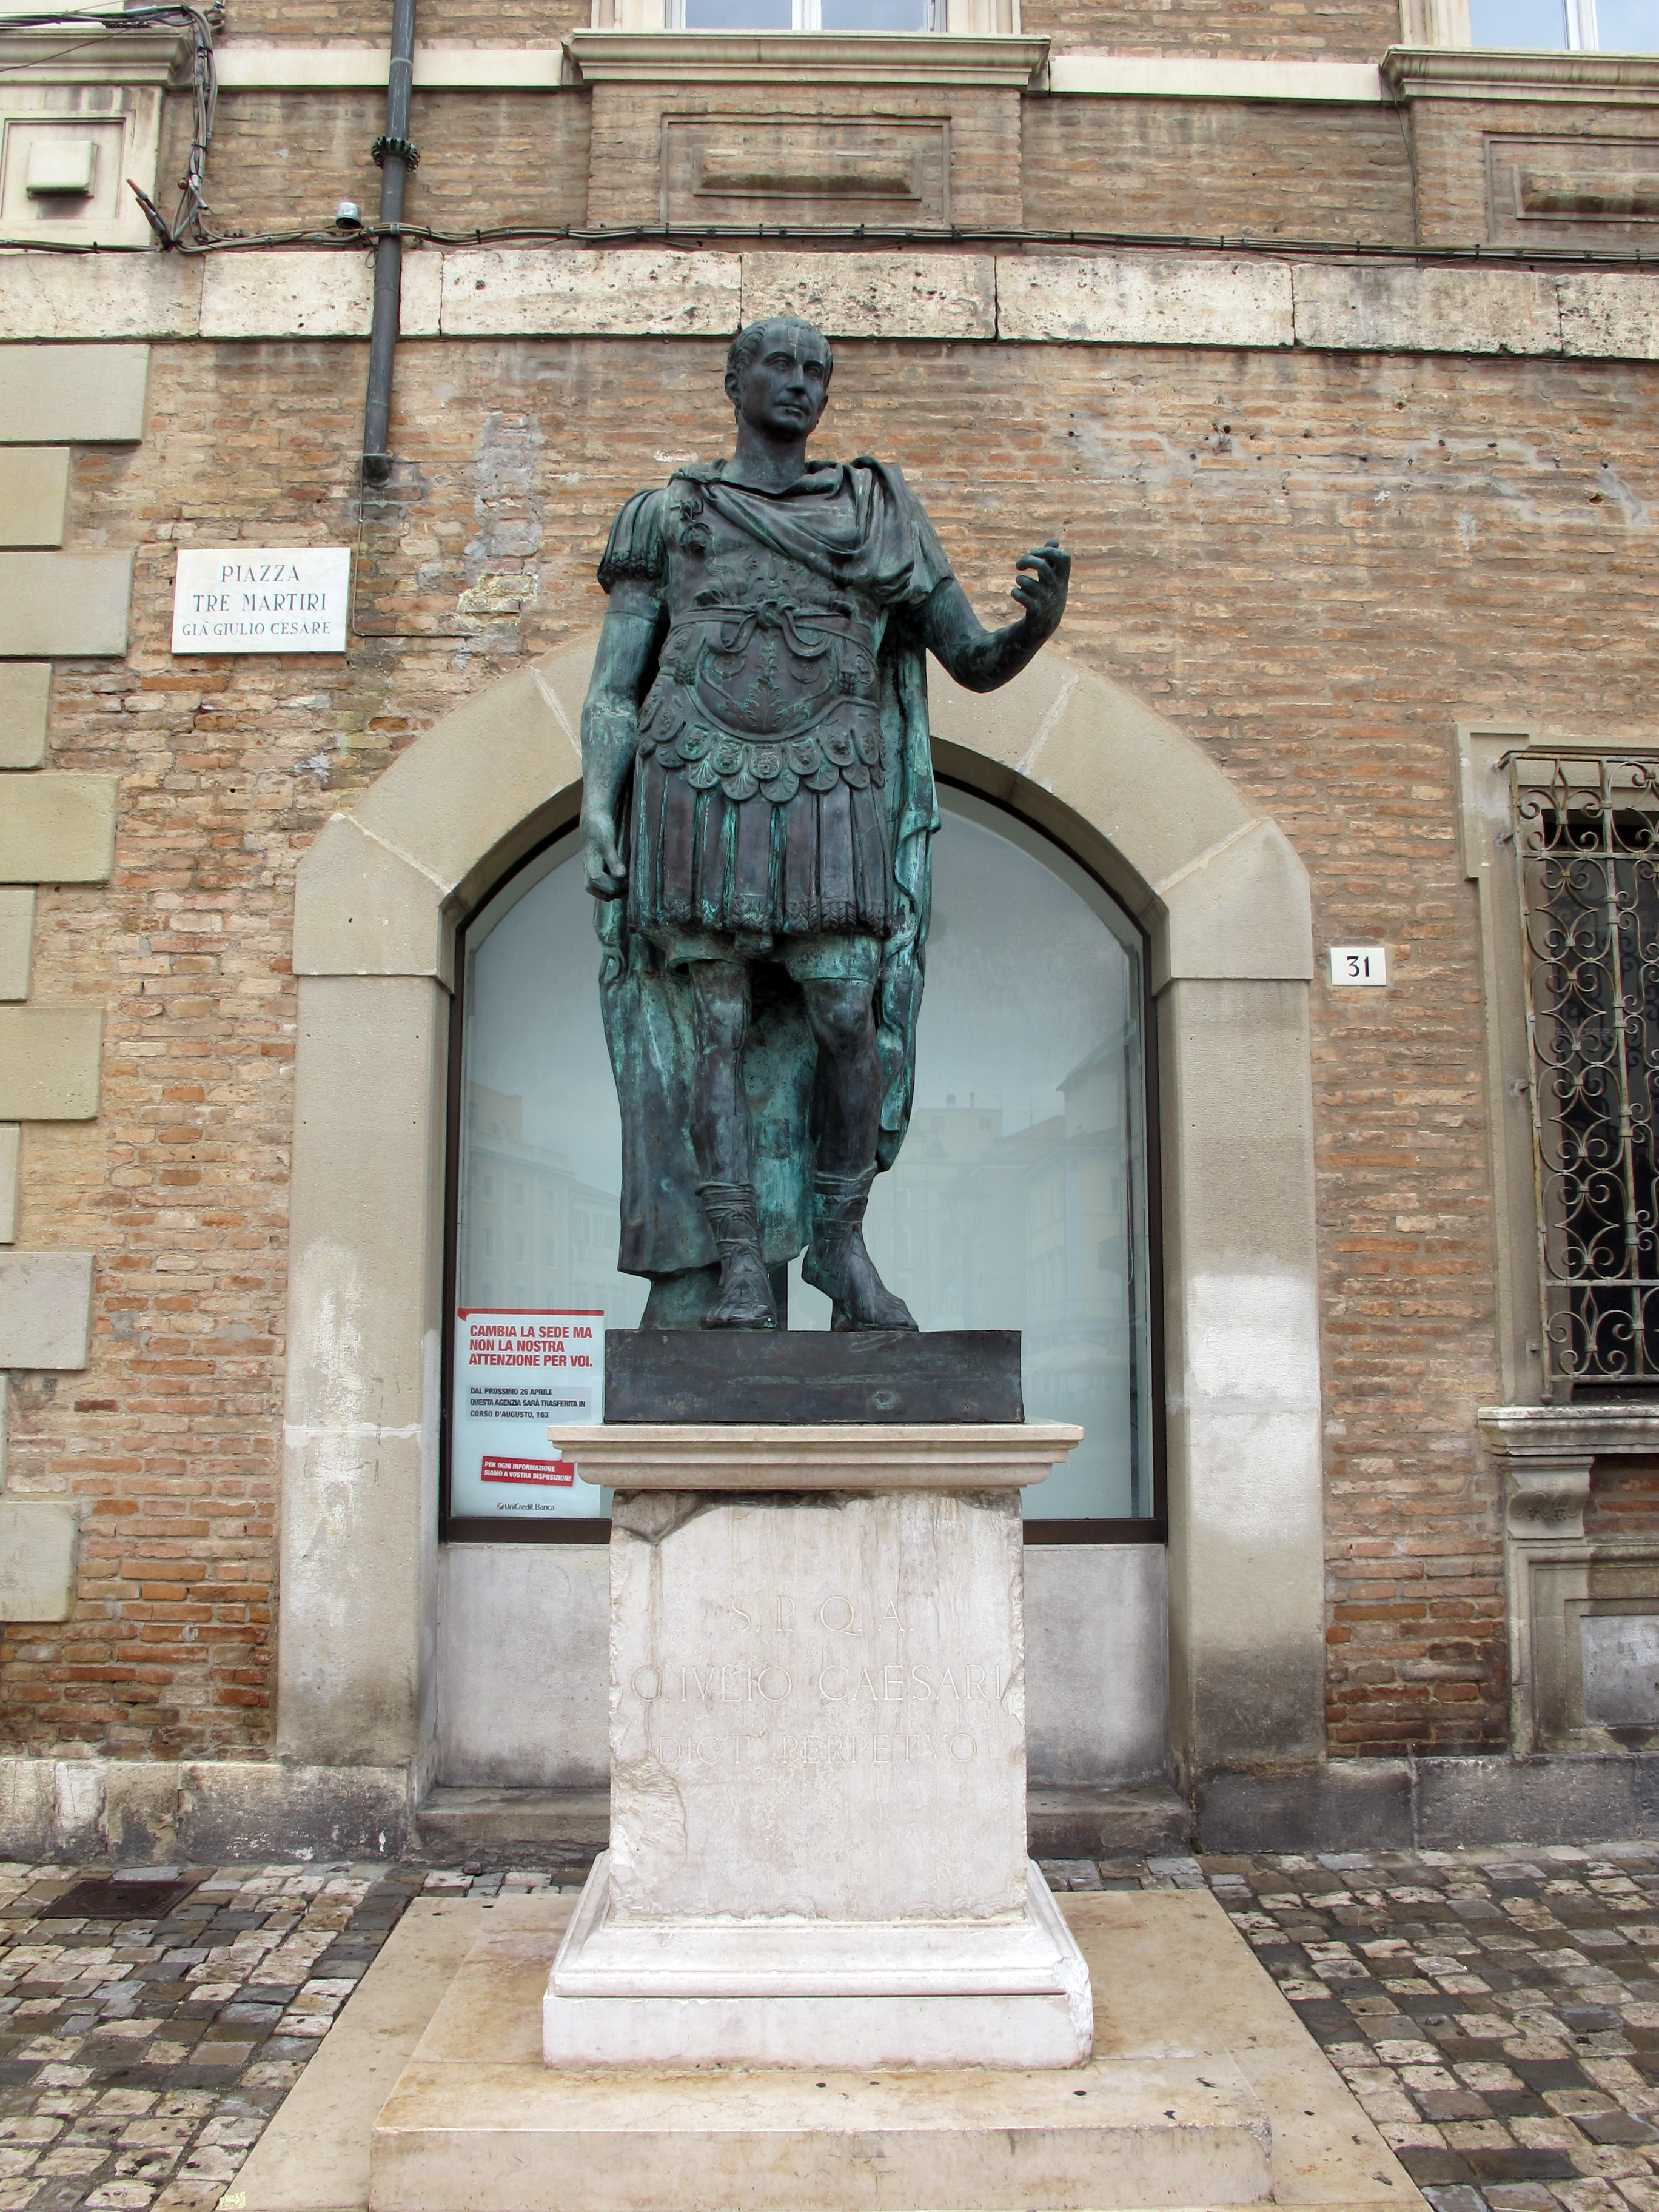 foto: https://upload.wikimedia.org/wikipedia/commons/e/e7/Rimini%2C_piazza_tre_martiri%2C_statua_di_cesare.JPG